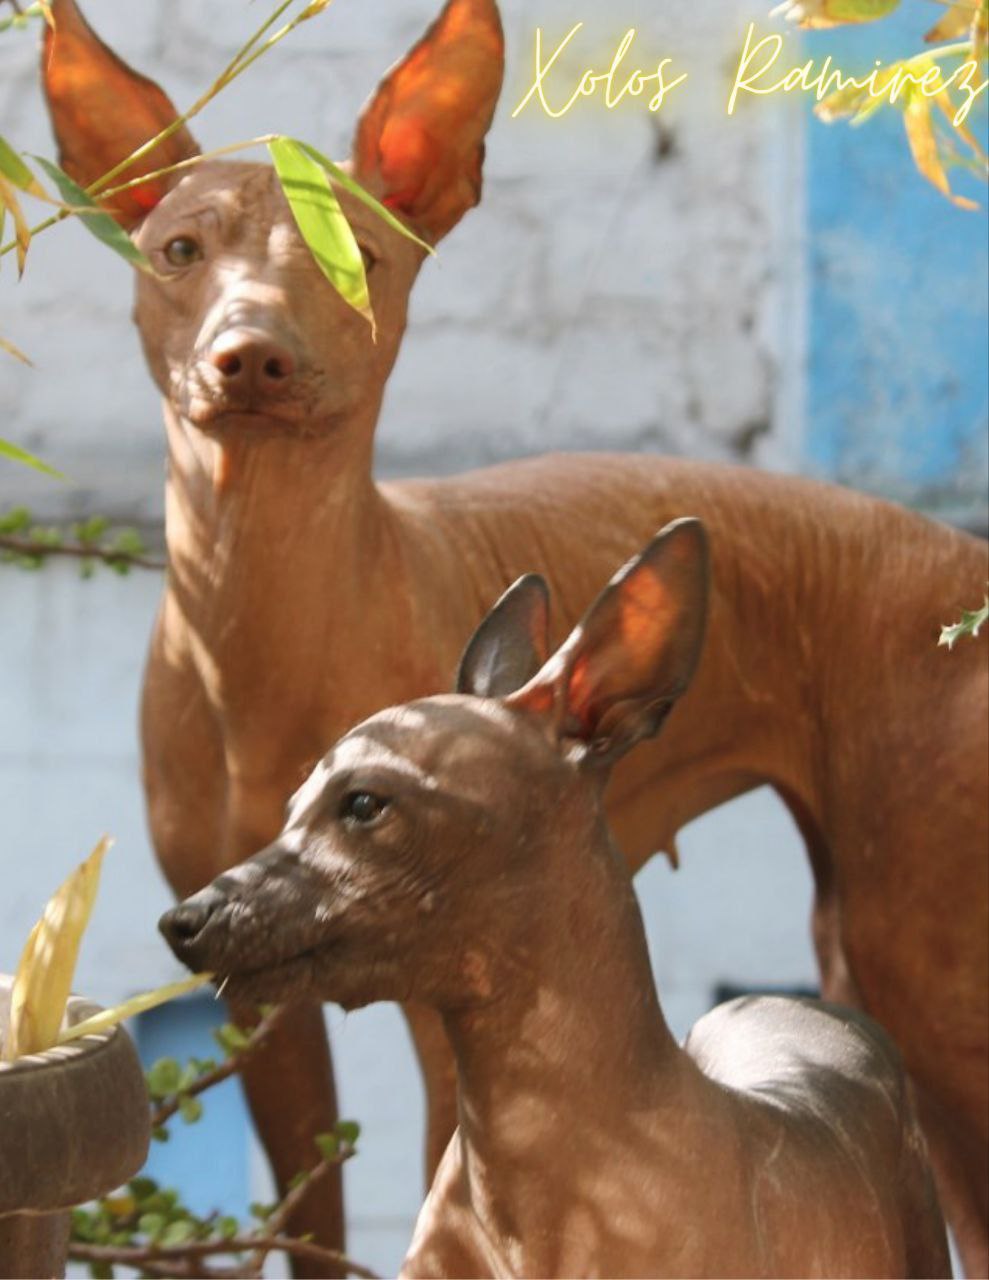 El enigma del Xoloitzcuintli: Descifrando la ausencia de pelo en el perro sagrado mexicano | Xolos Ramirez